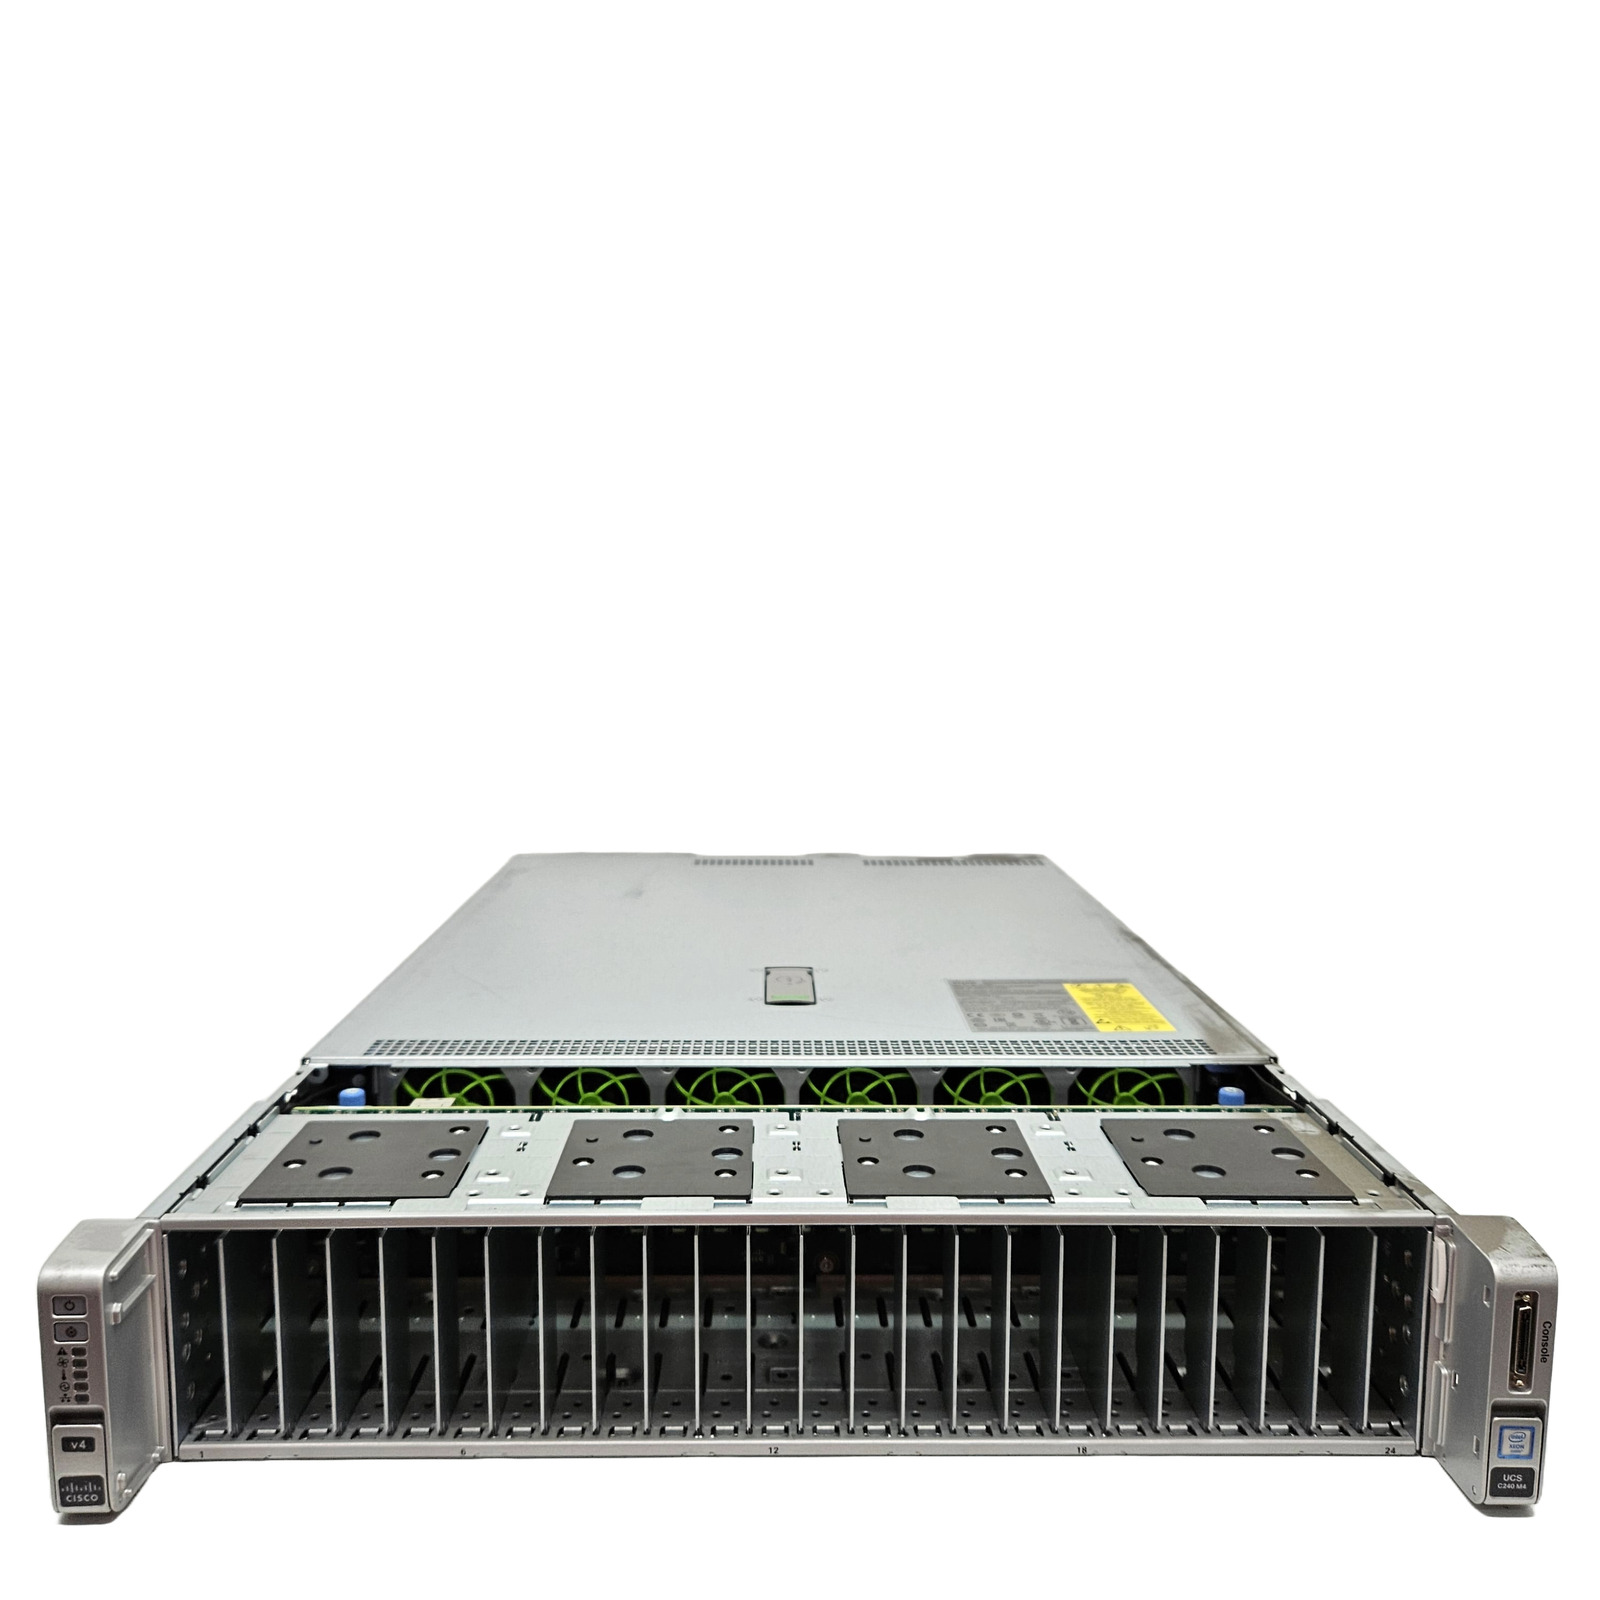 Cisco UCS C240 M4 2U Server w/ 2x E5-2680v4, NO RAM